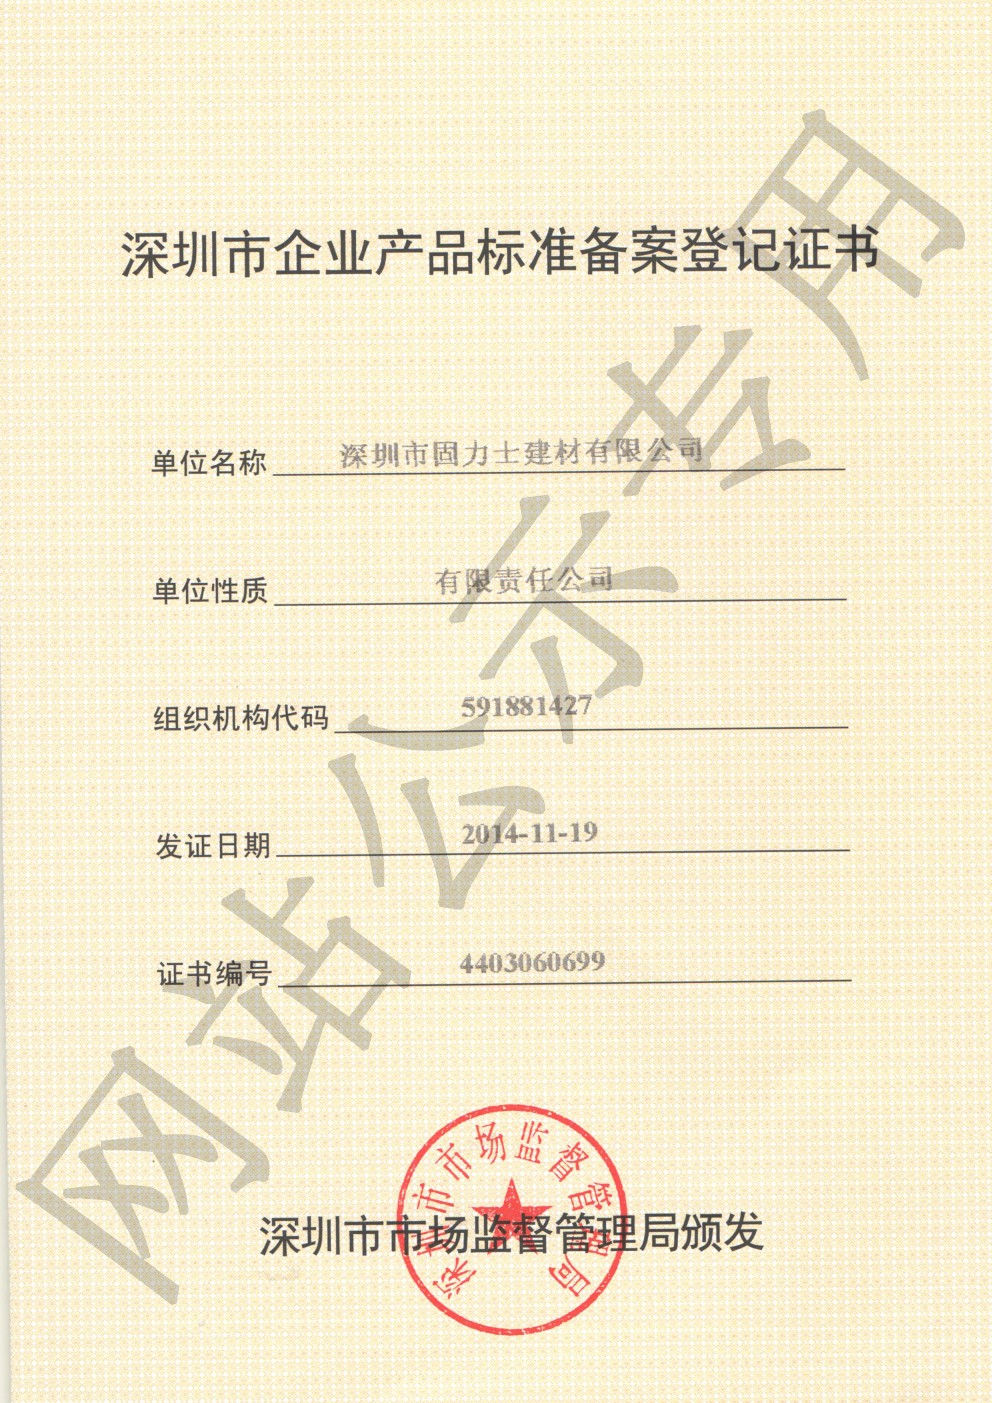 轮台企业产品标准登记证书